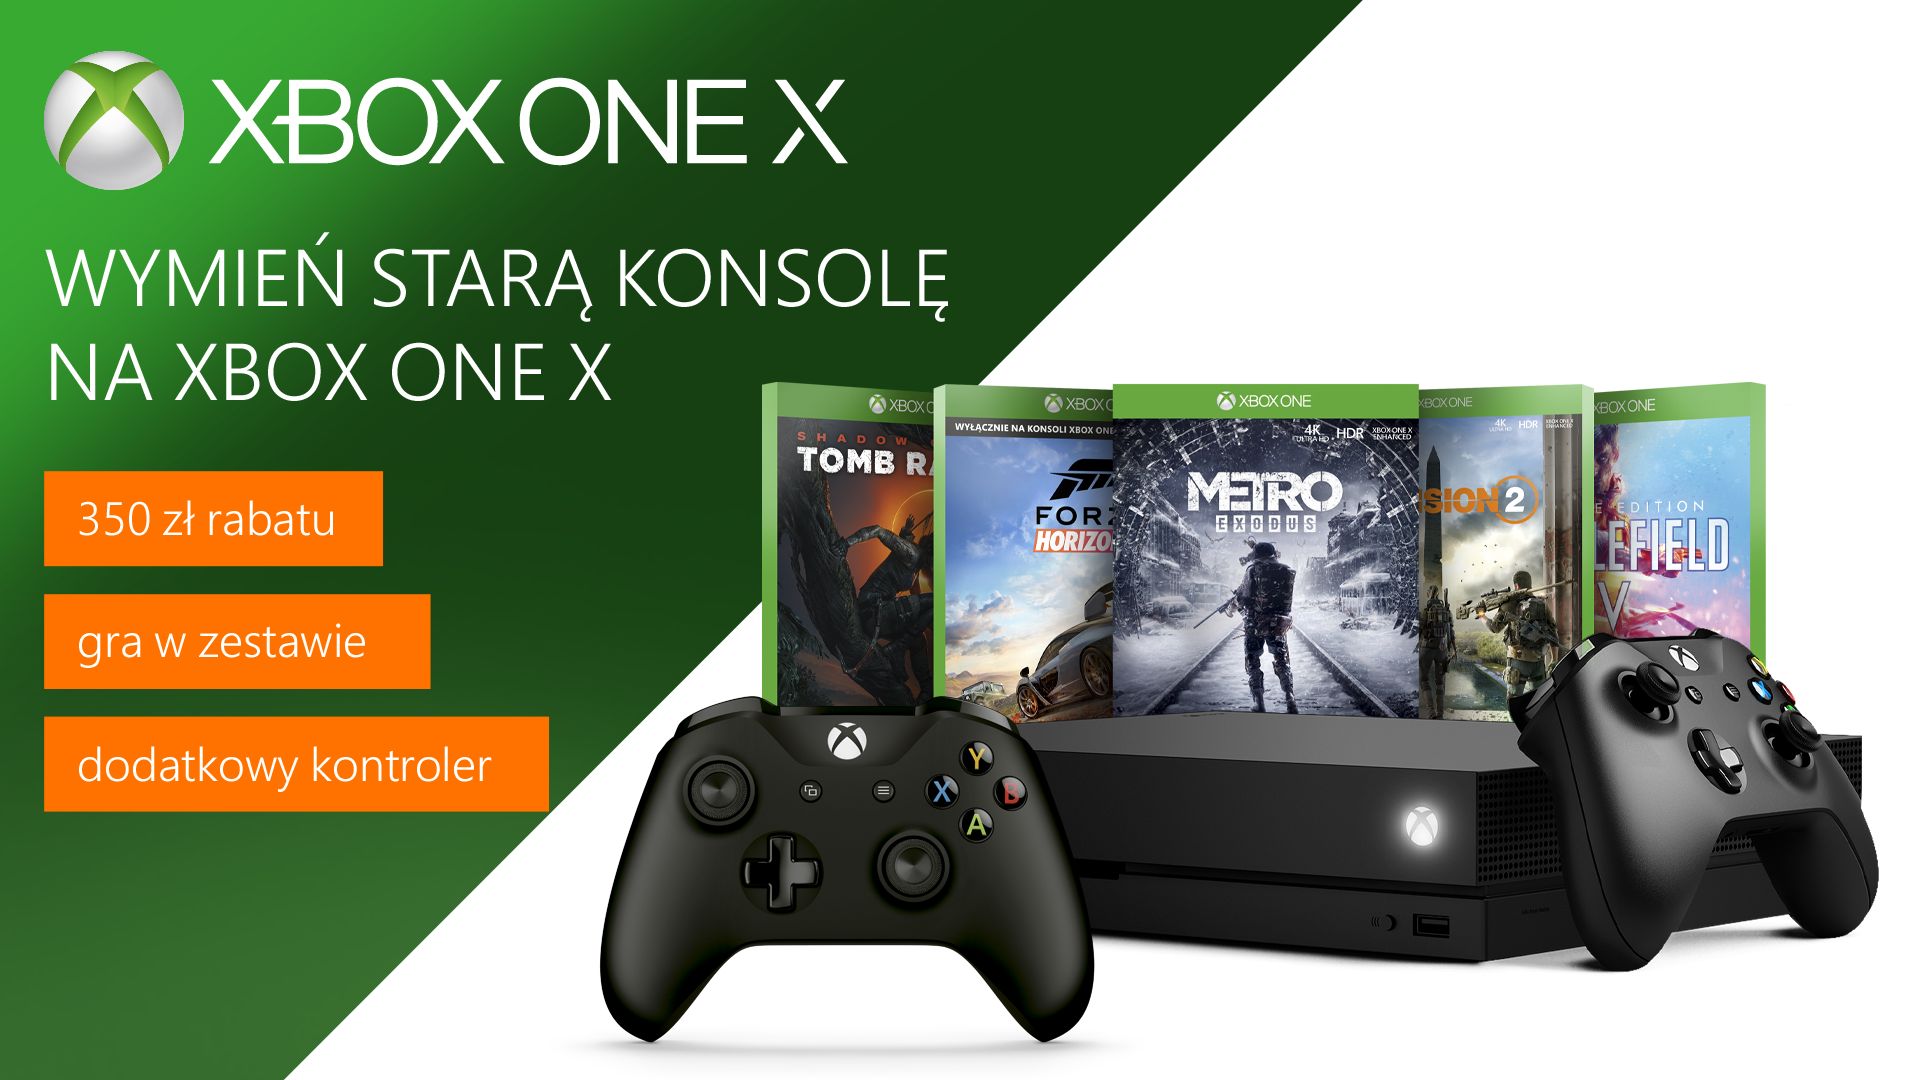 Wymień starą konsolę na Xbox One X i odbierz zniżkę 350 zł na zestaw z grą i dodatkowy kontroler